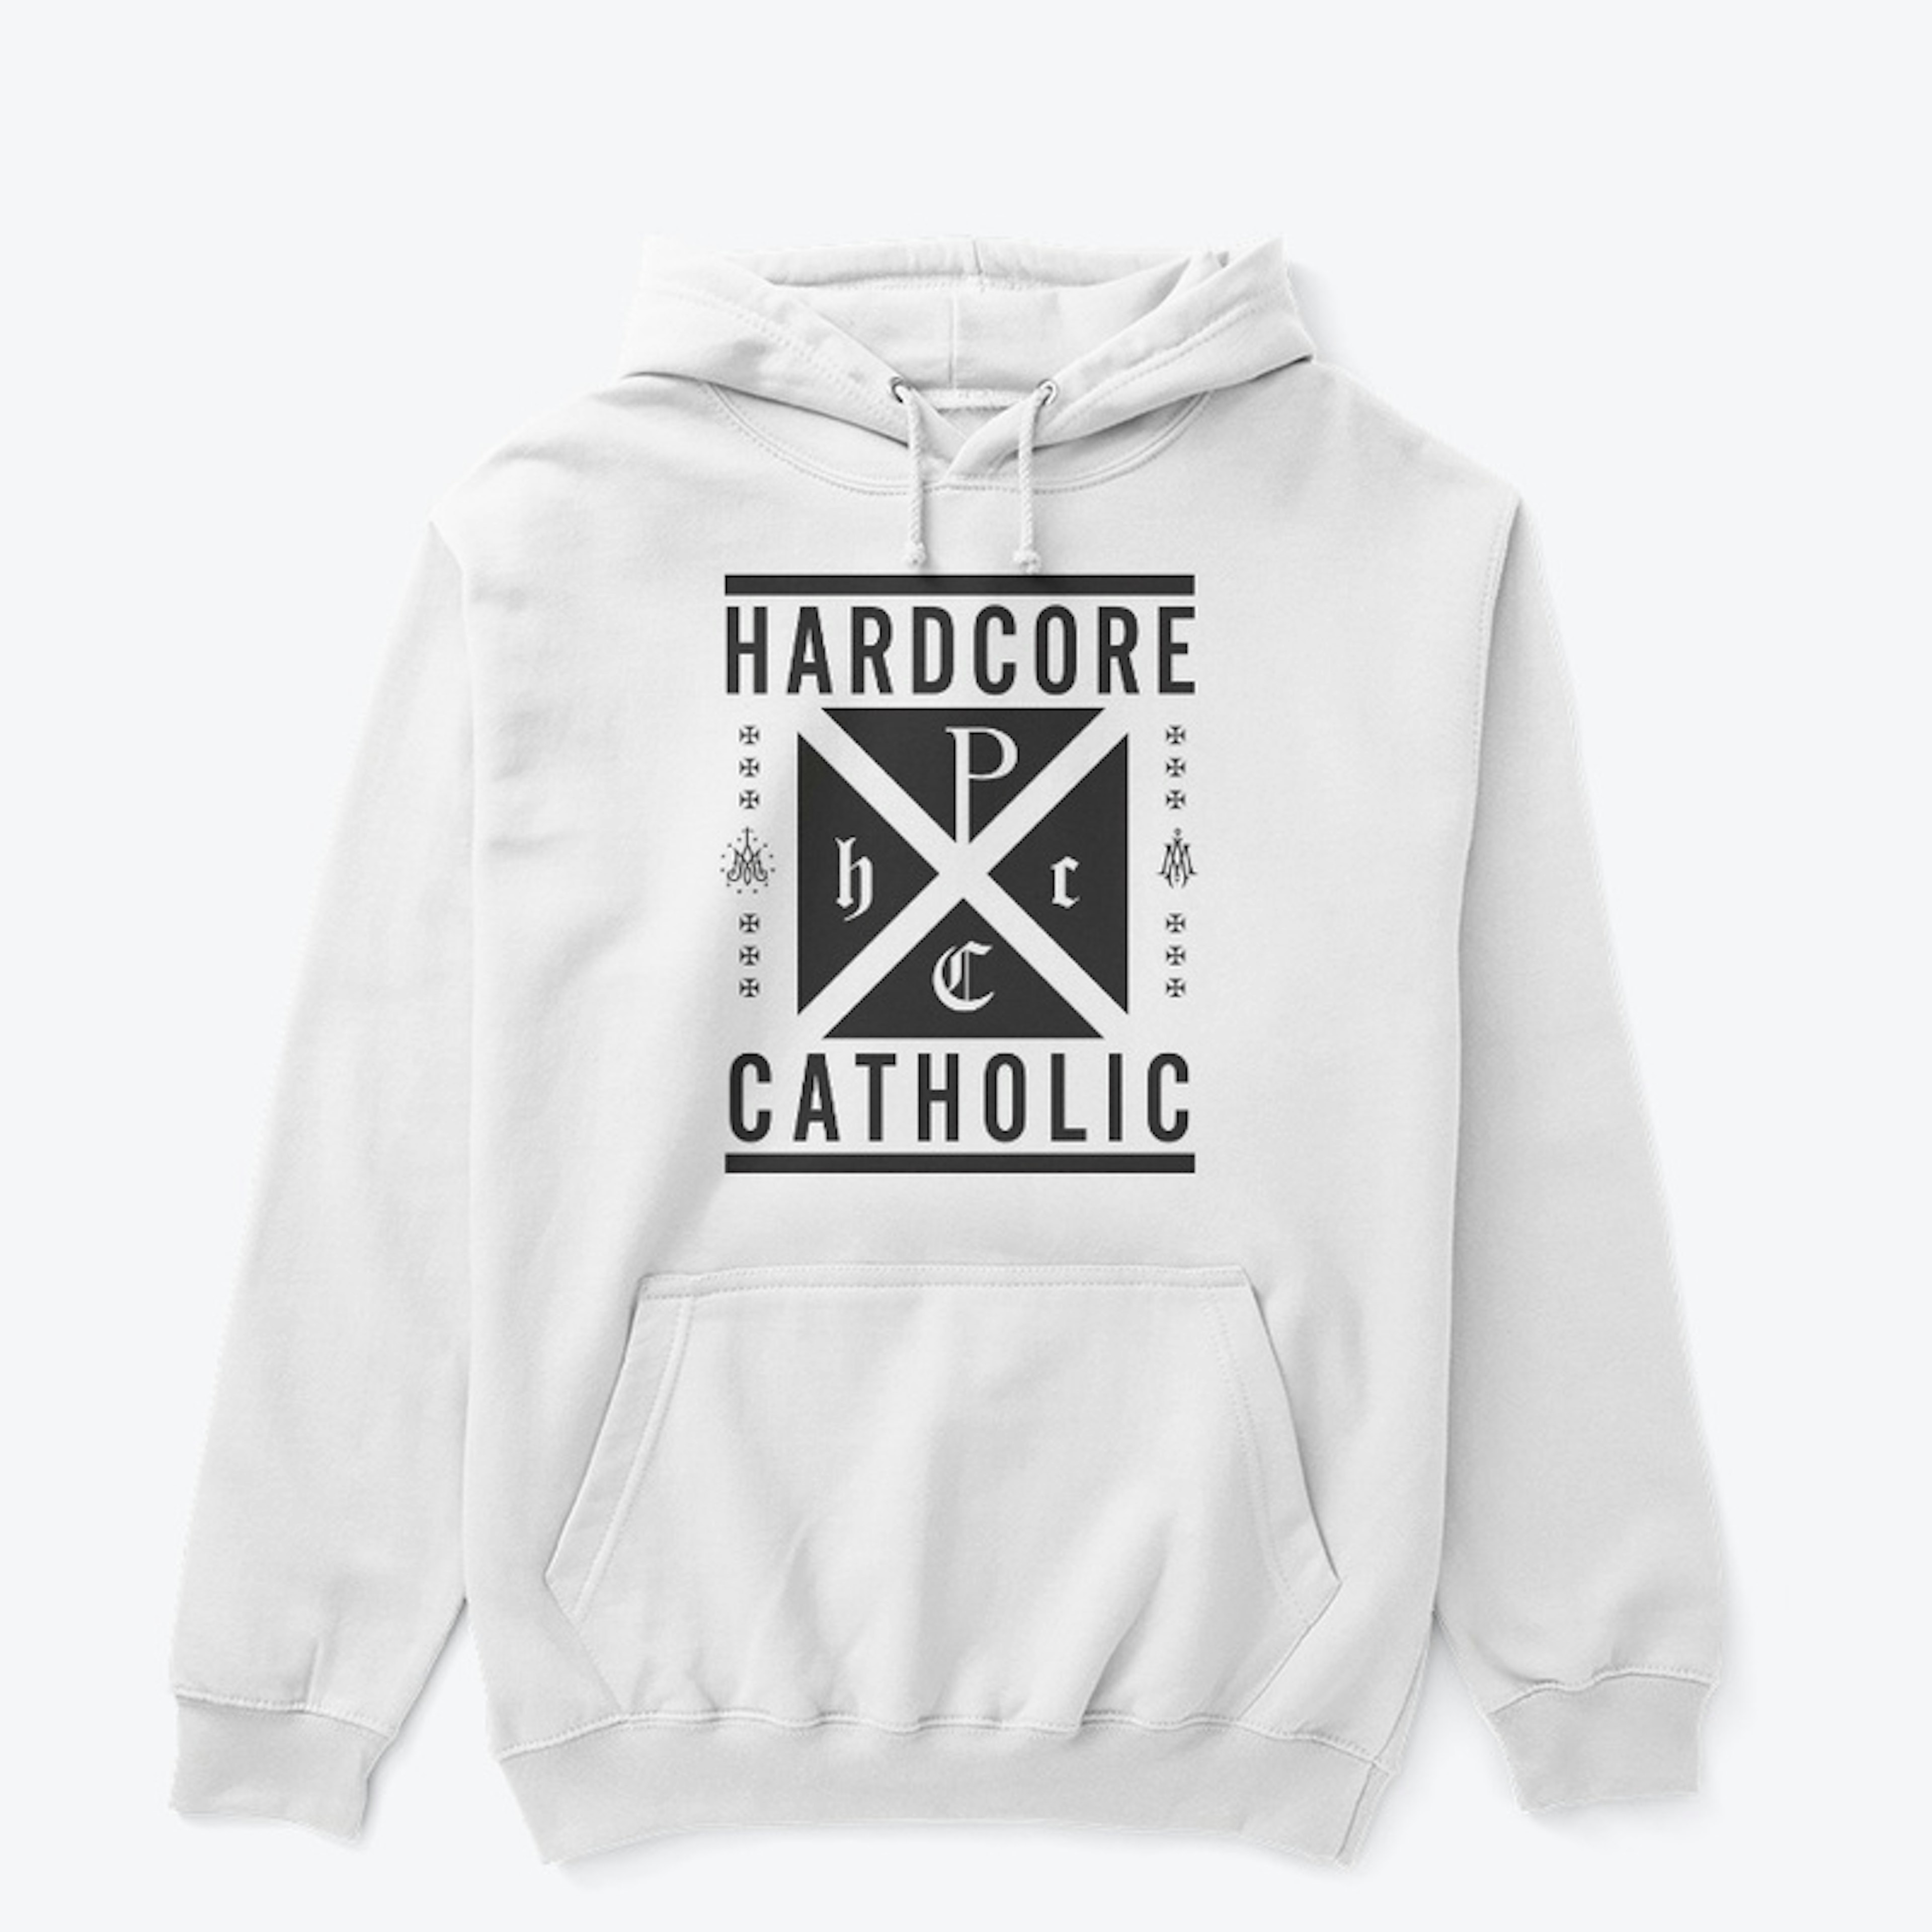 Hardcore Catholic